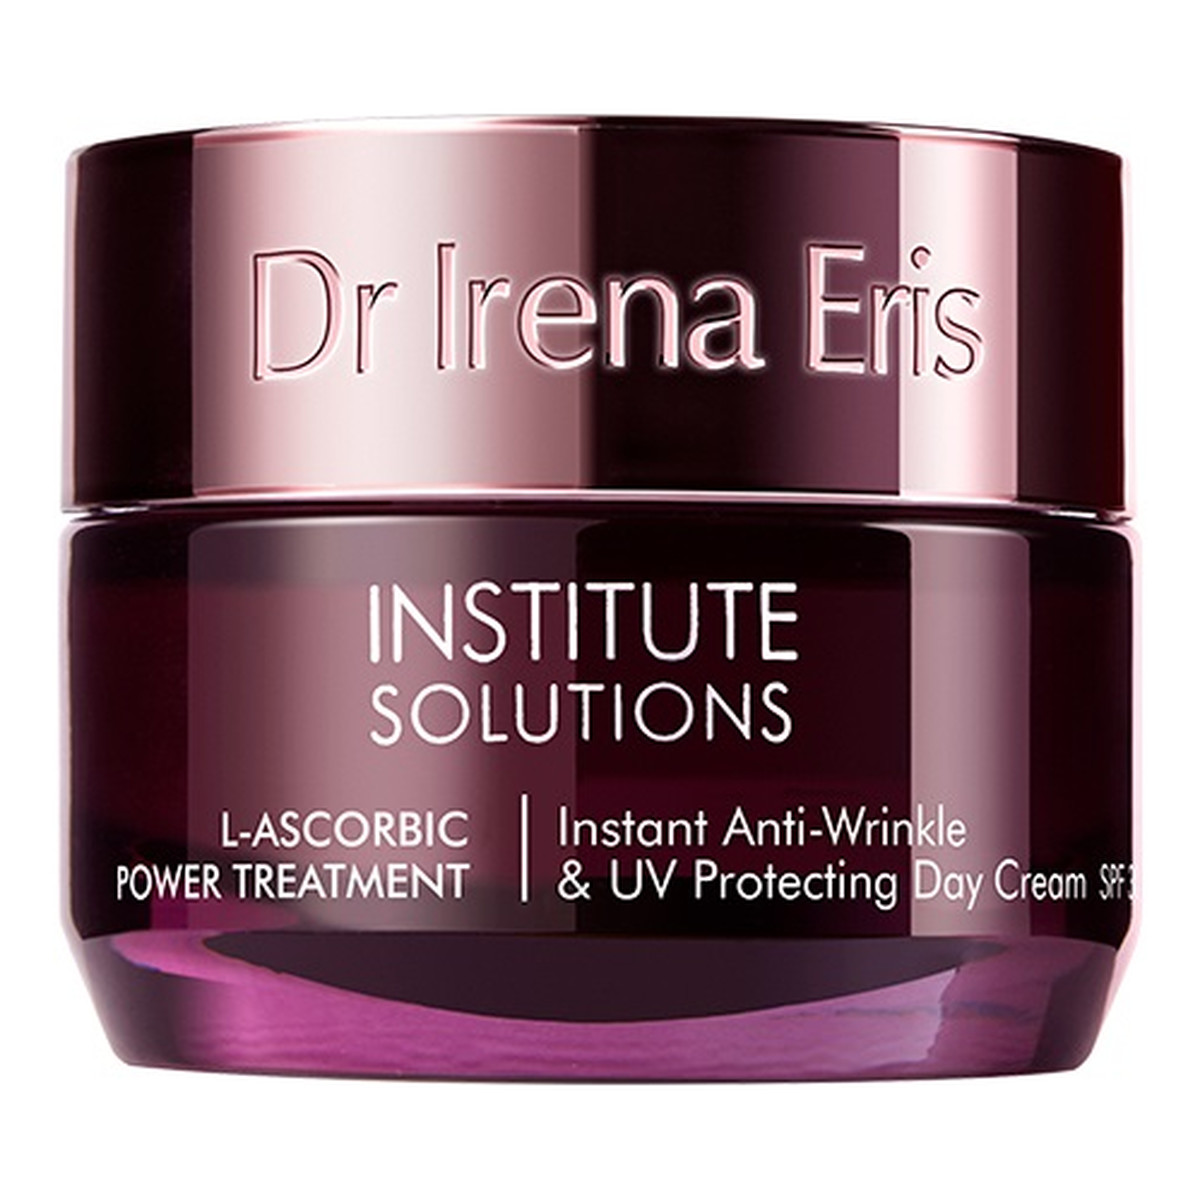 Dr Irena Eris Institute Solution L-ascorbic Power Treatment Instant Anti-Wrinkle & UV Protecting Day Cream intensywnie ochronny krem przeciwzmarszczkowy na dzień SPF30 50ml